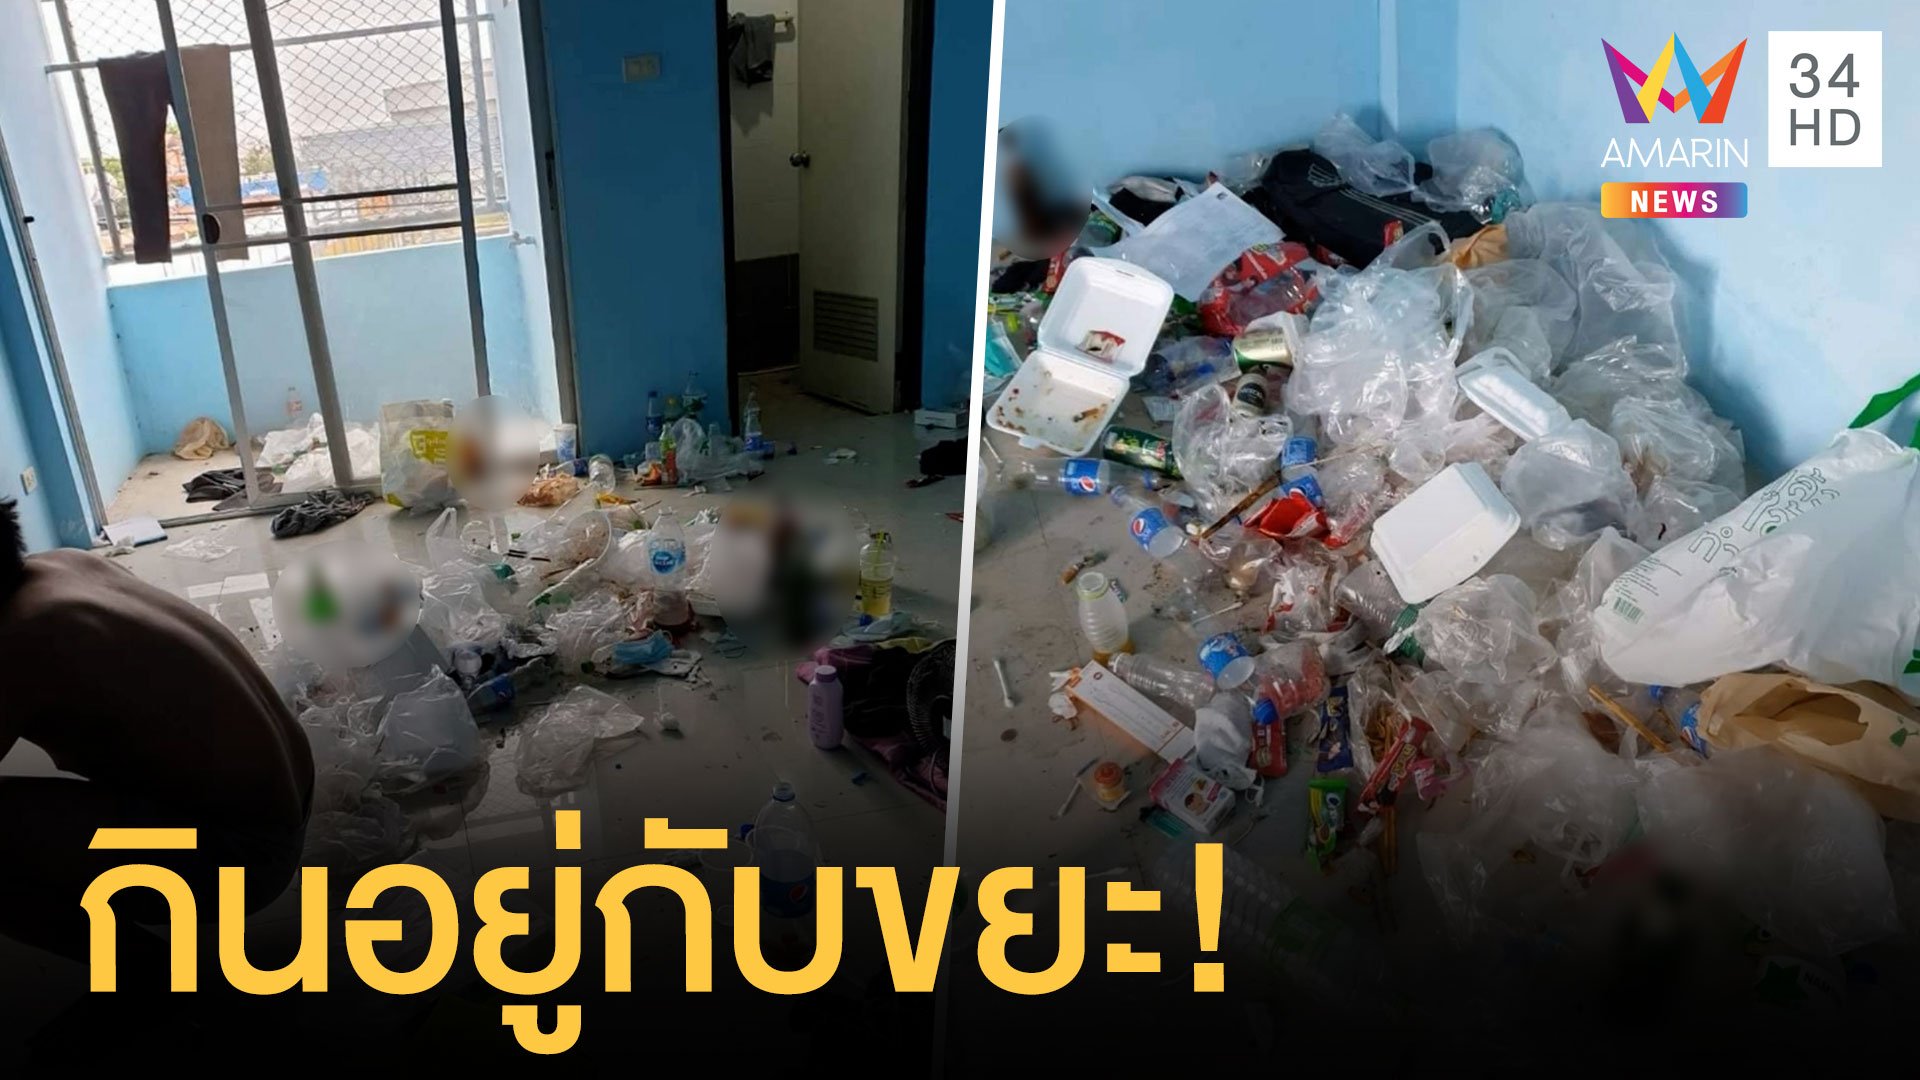 หนุ่มเช่าห้องไม่จ่าย 2 เดือน เปิดห้องผงะกินอยู่กับขยะ | ข่าวอรุณอมรินทร์ | 11 เม.ย. 64 | AMARIN TVHD34